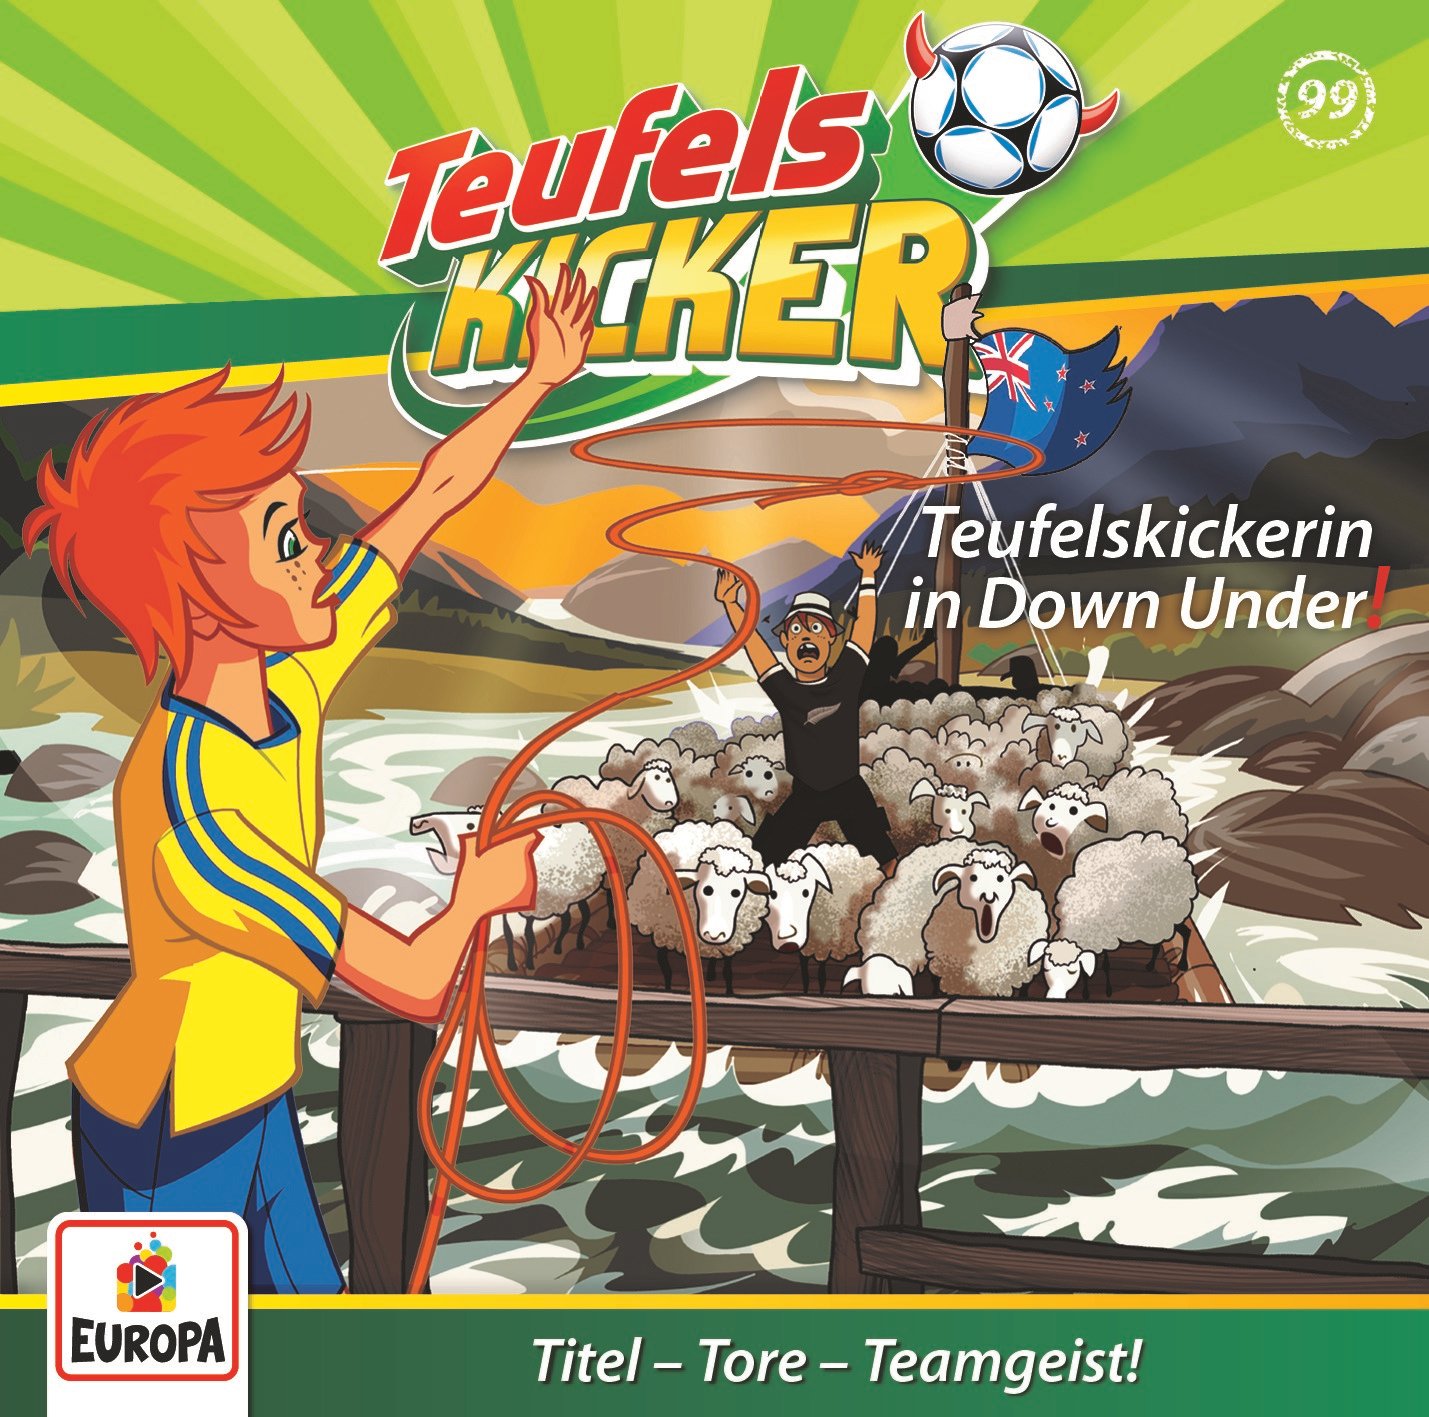 Teufelskicker : Teufelskickerin in Down Under!